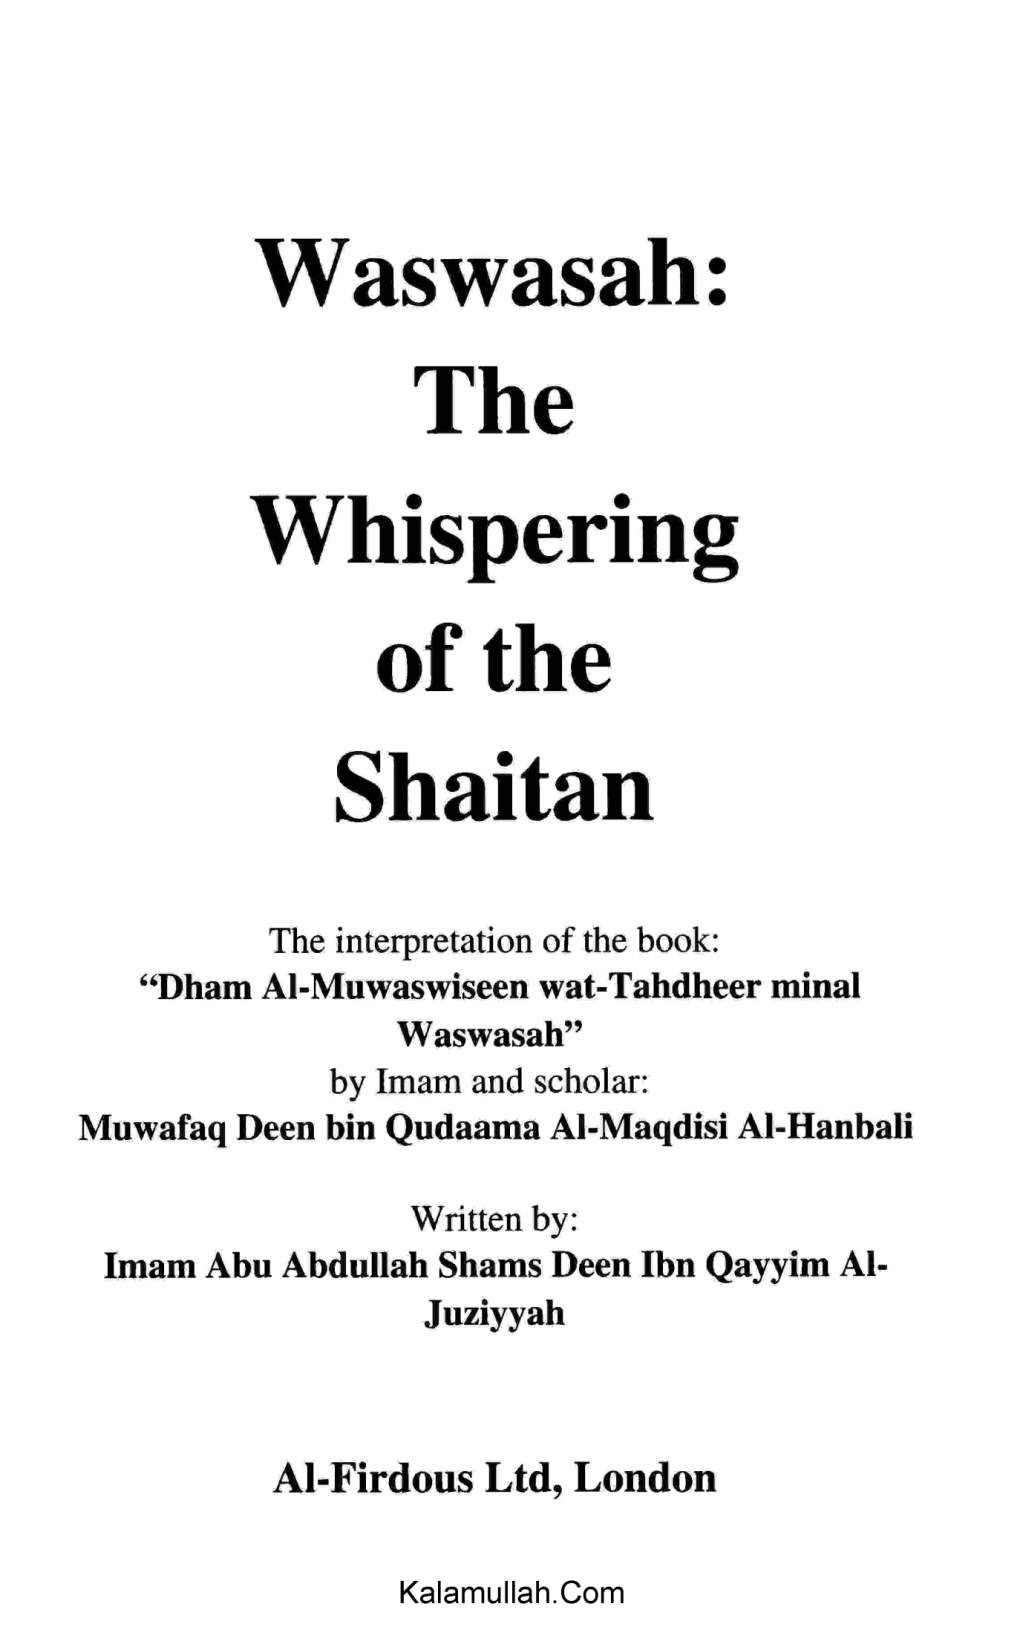 Waswasah: the Whispering of the Shaitan